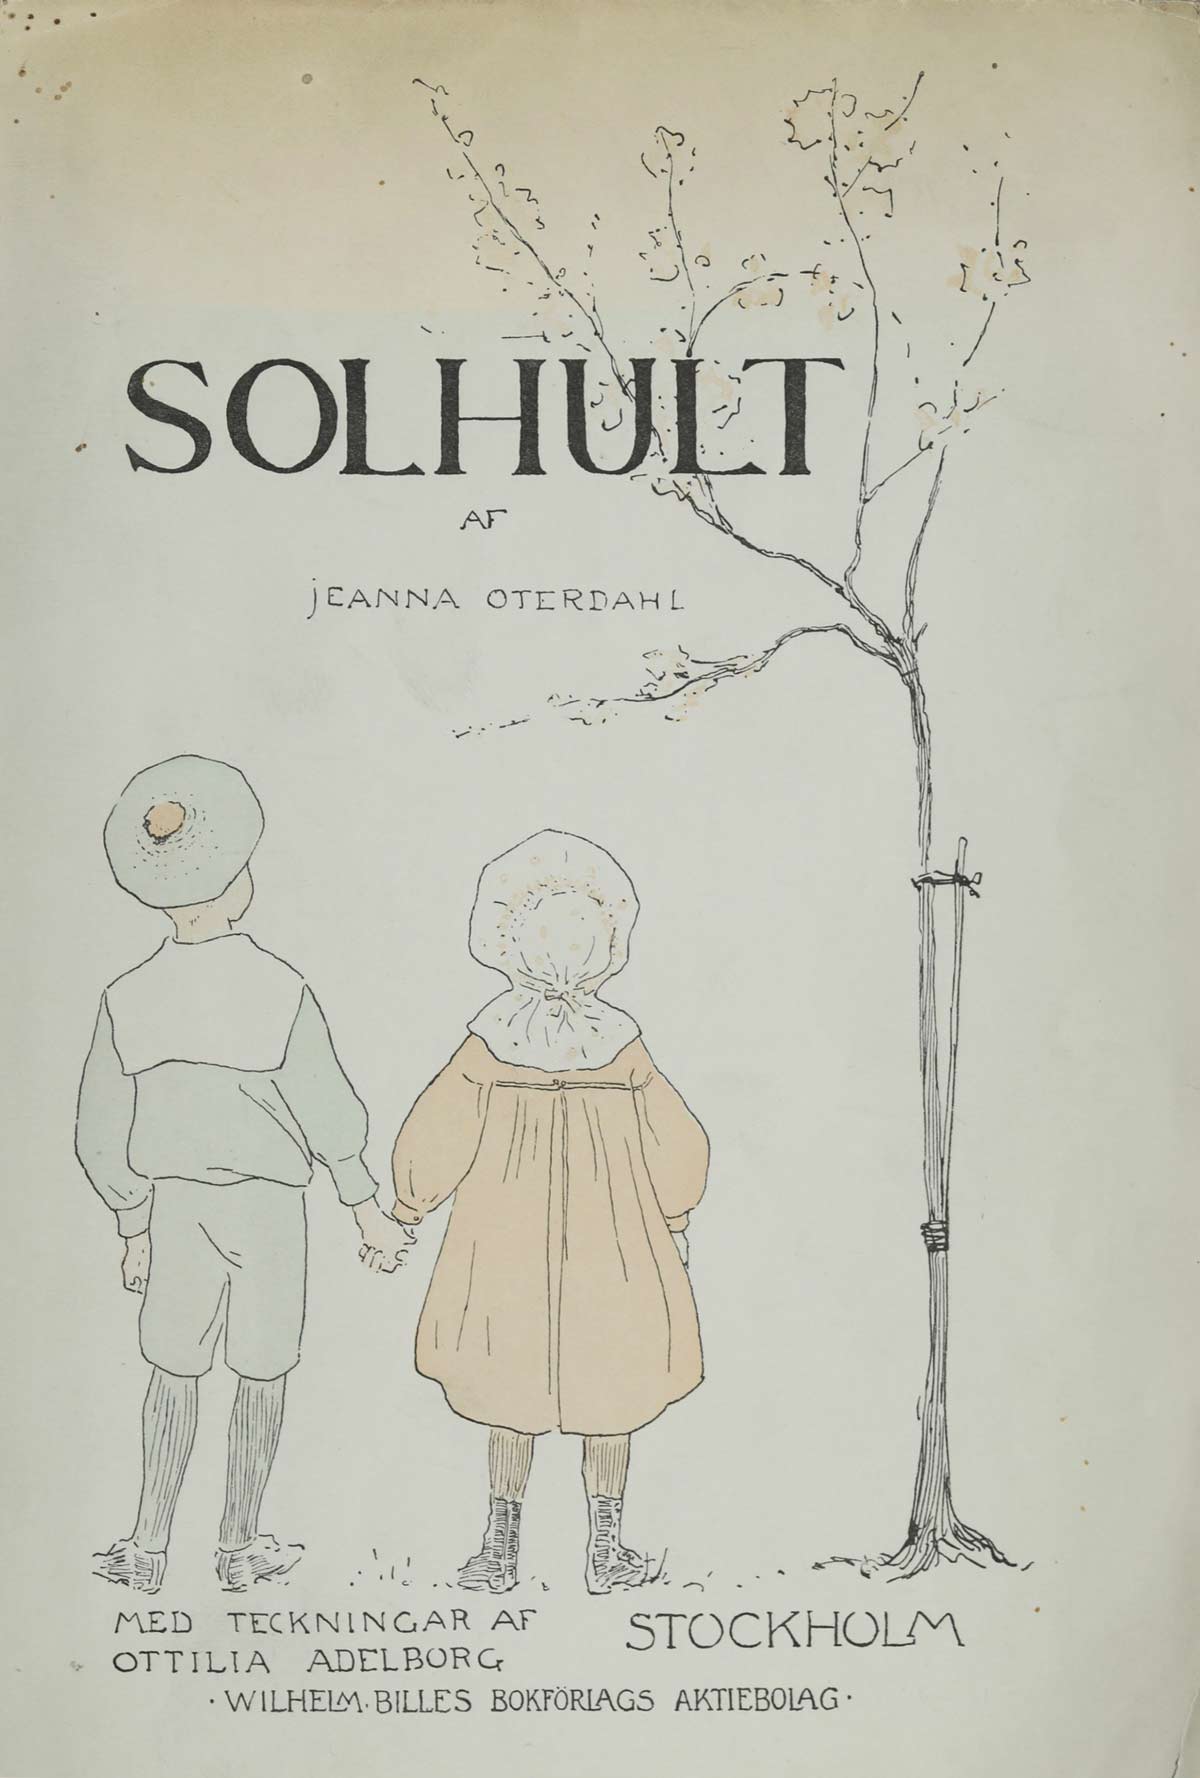 Jeanna Oterdahl: Solhult (1901)